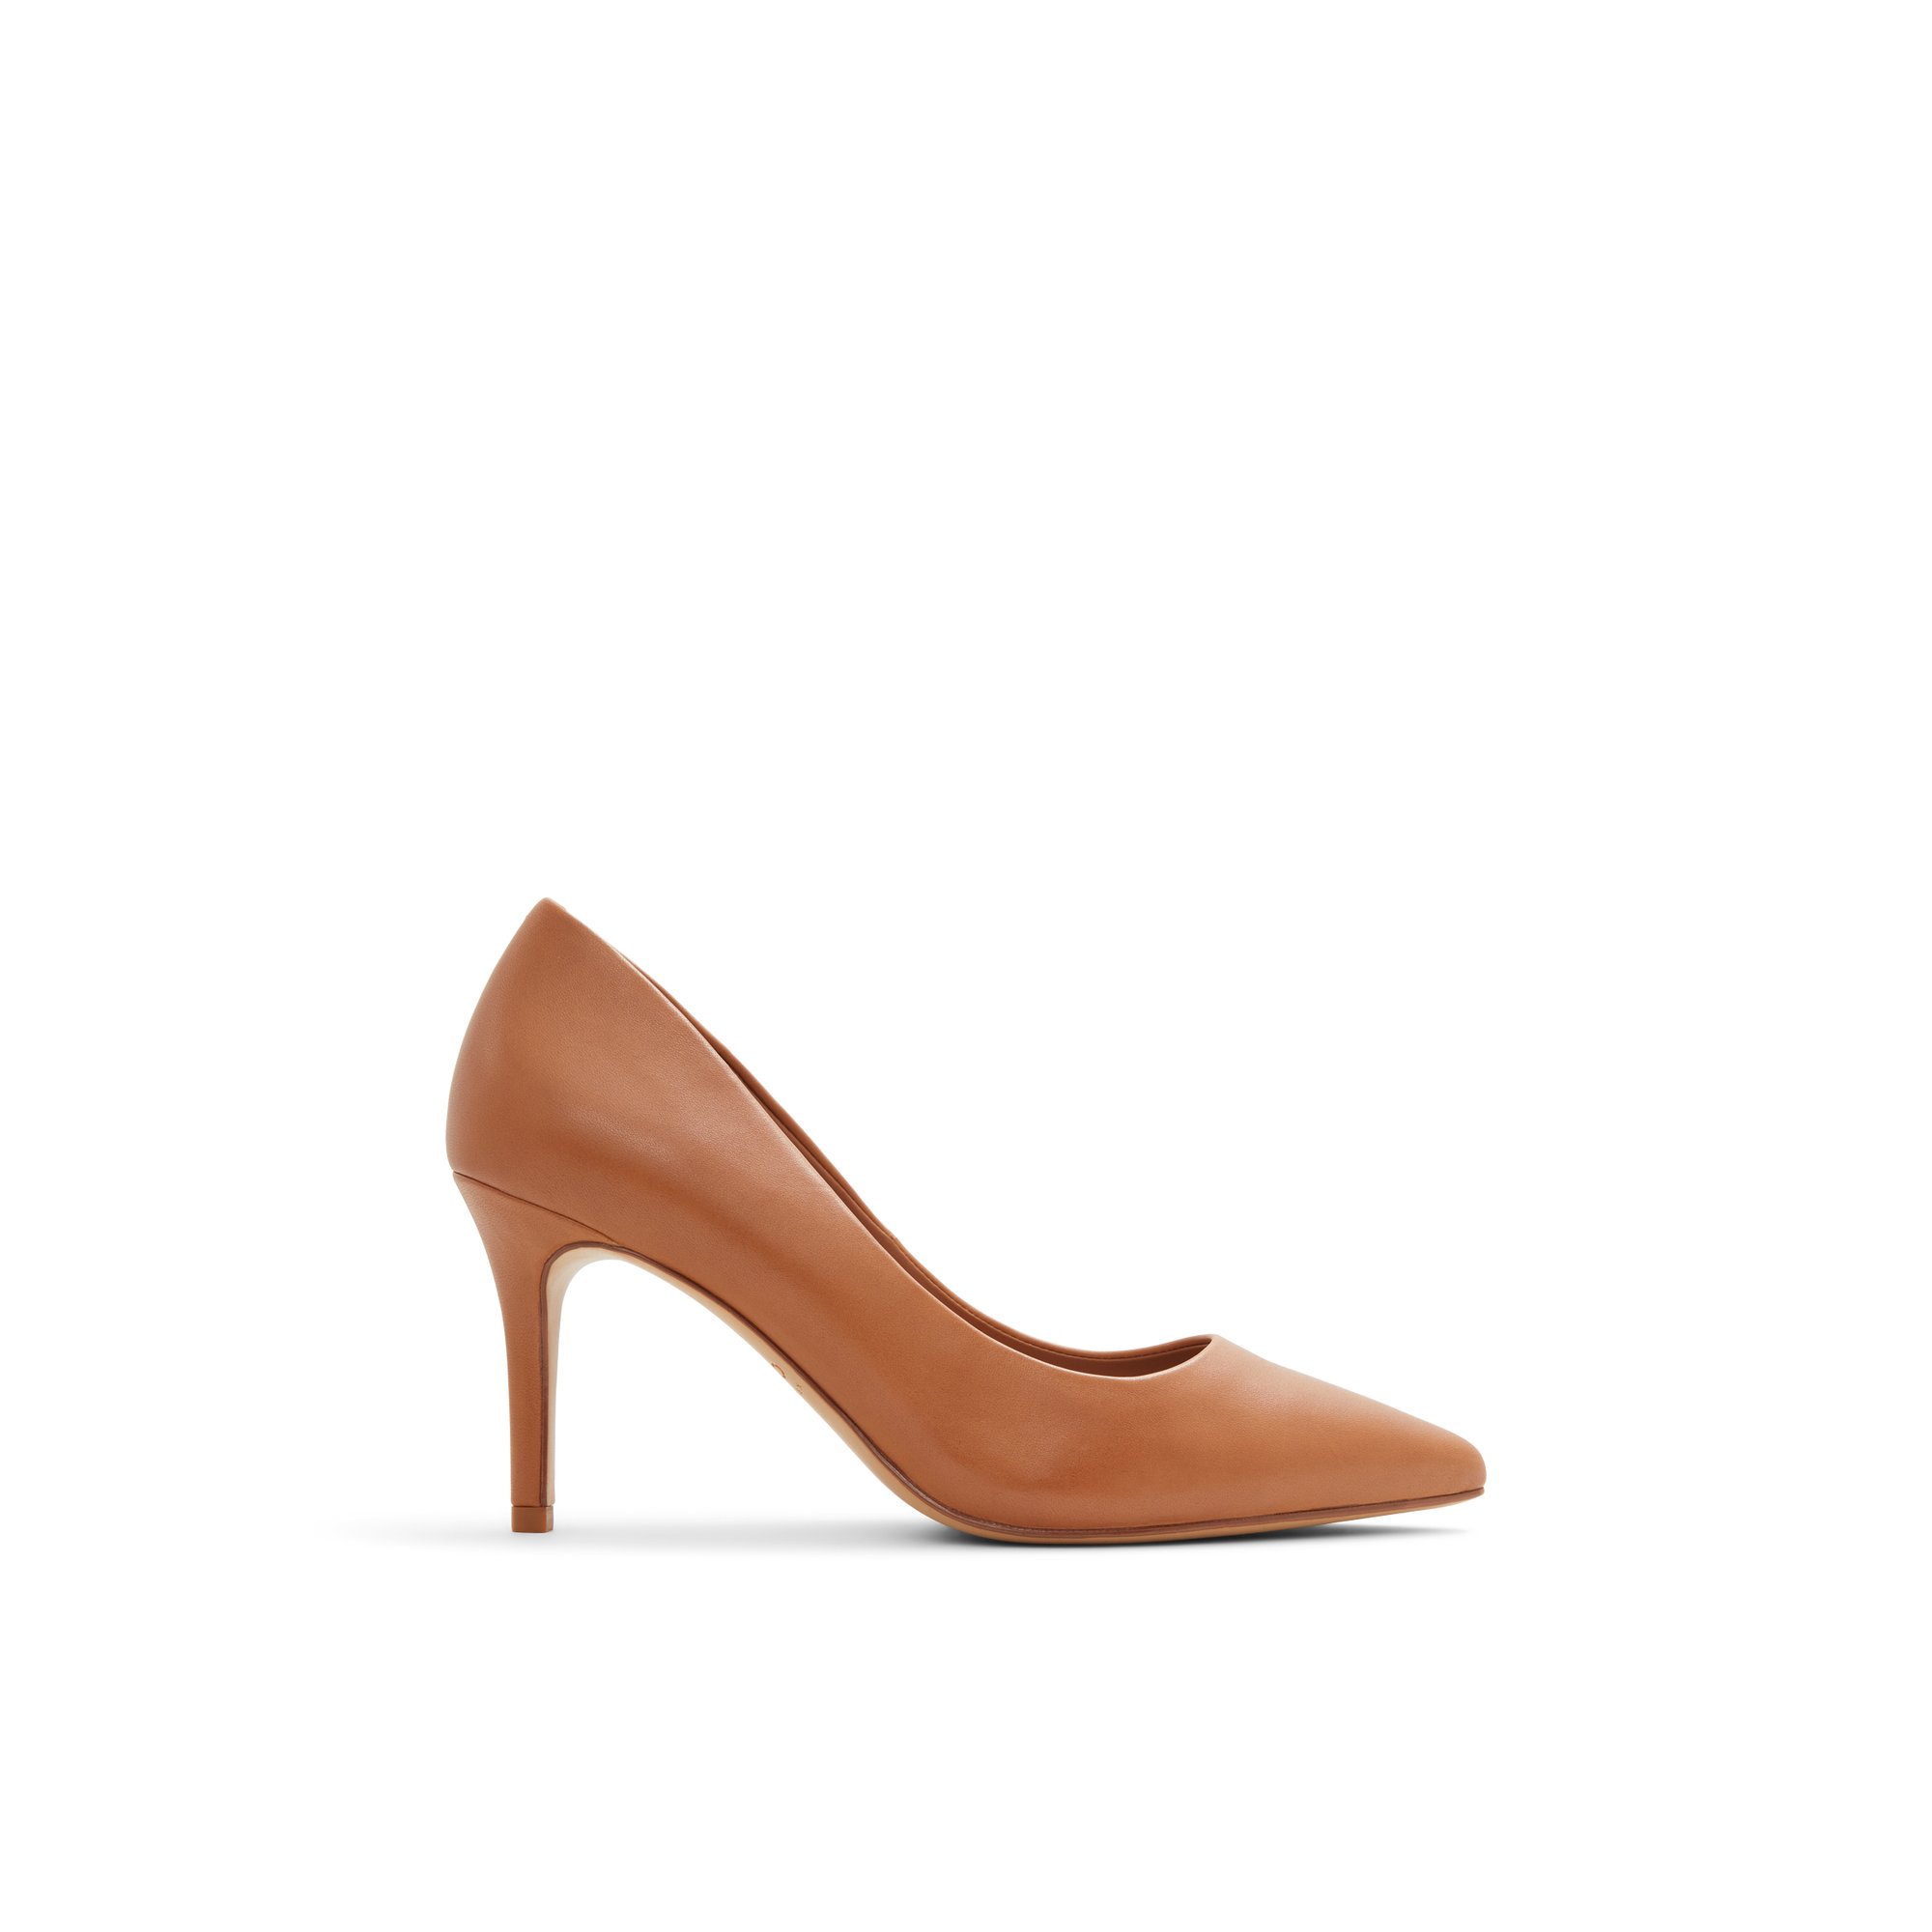 ALDO Sereniti - Women's Heels Pumps - Brown